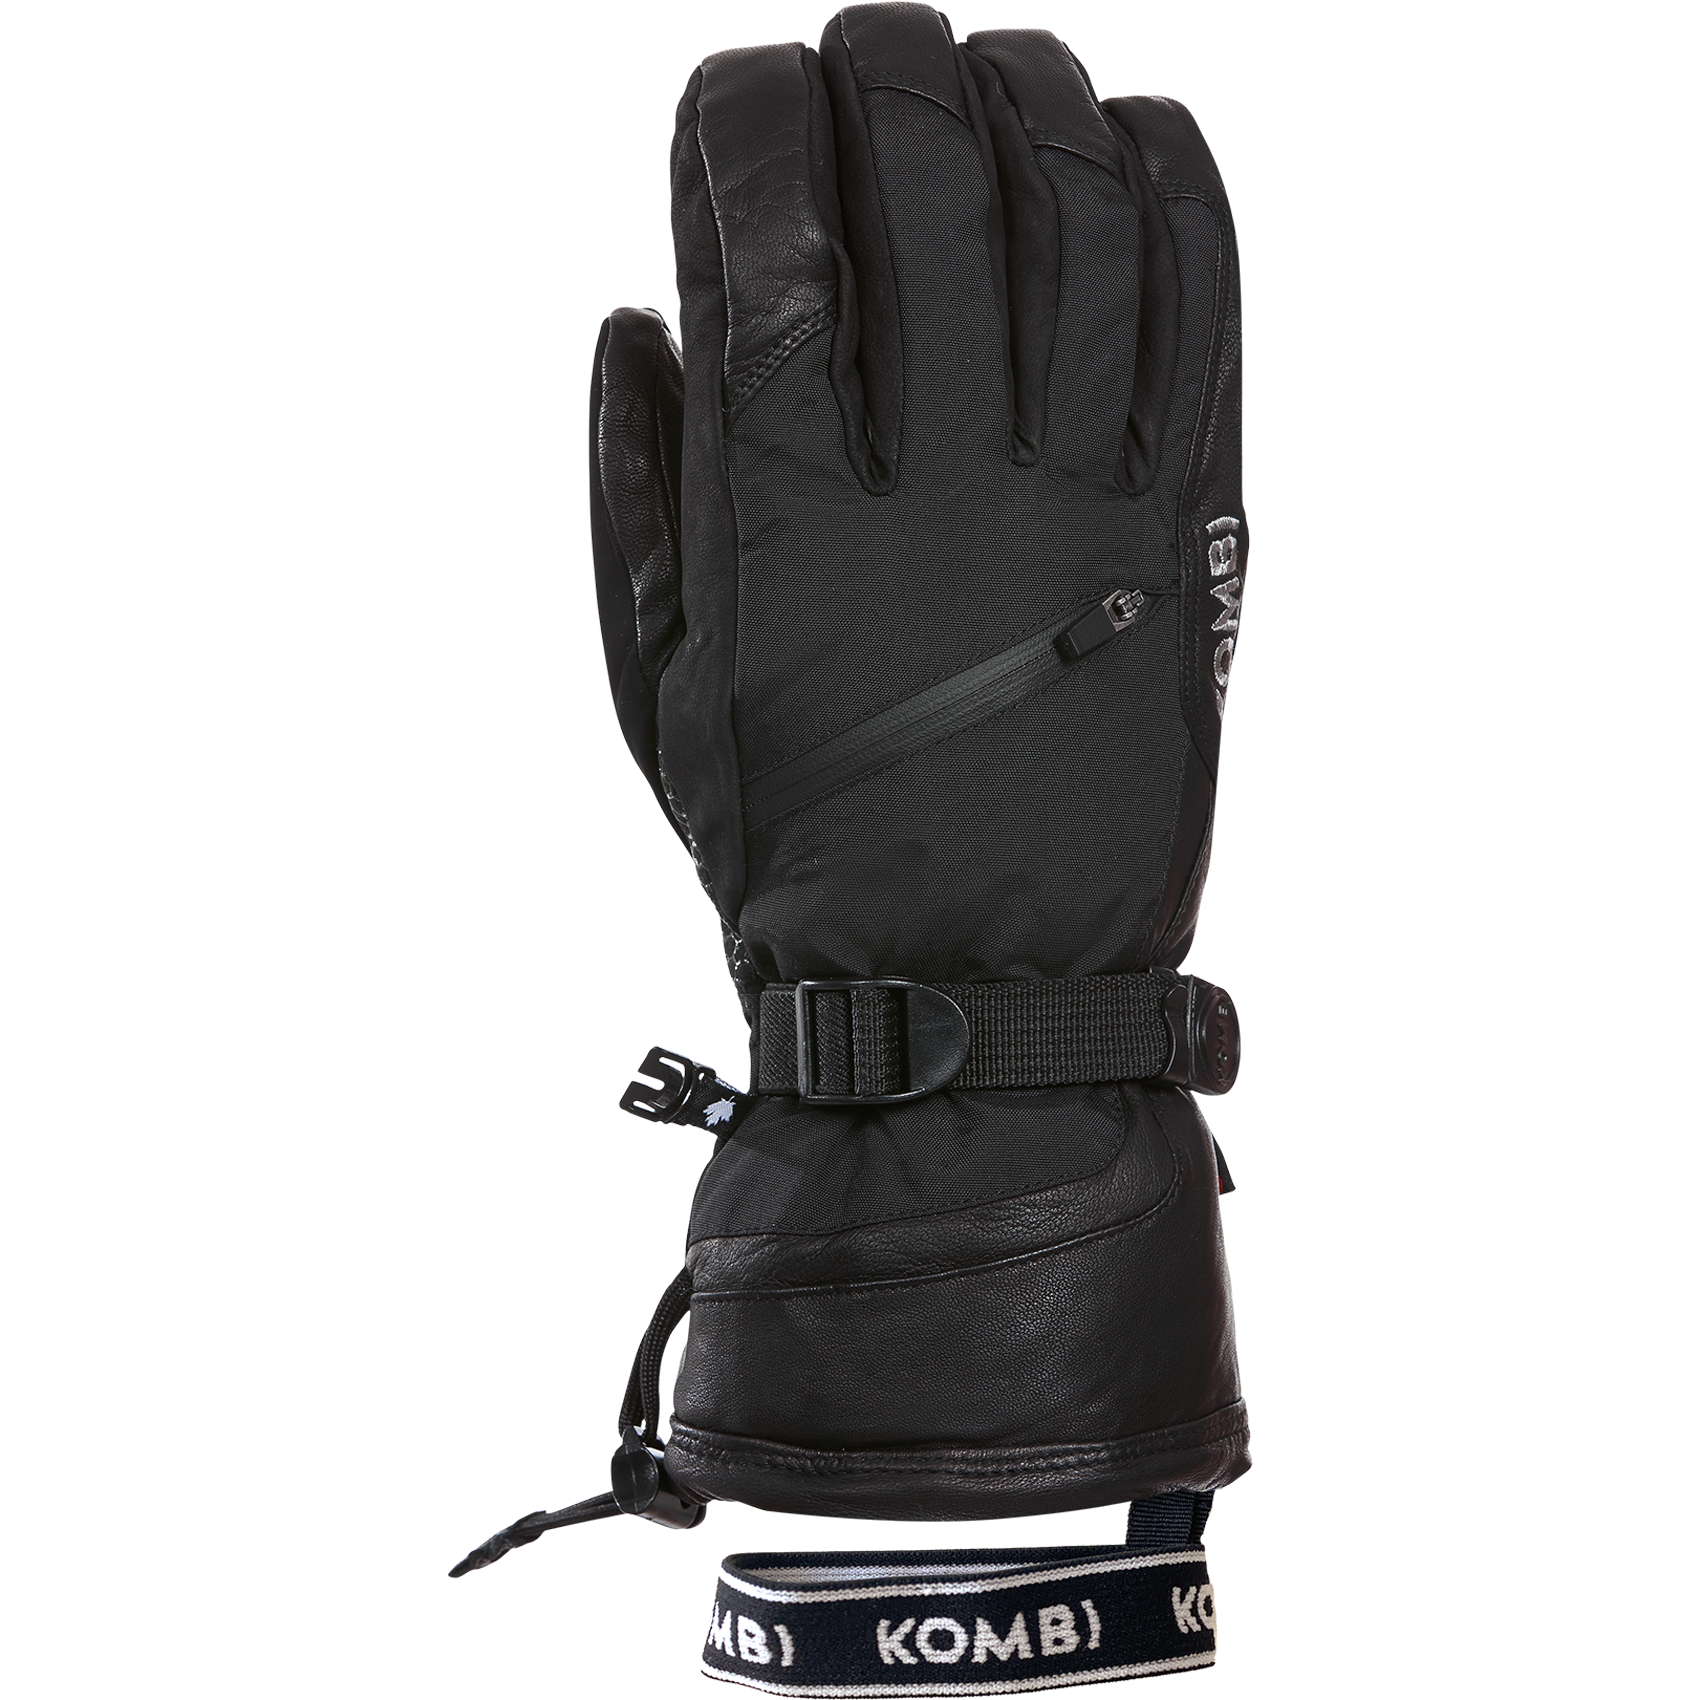 Kombi Men's Patroller Gloves - Black